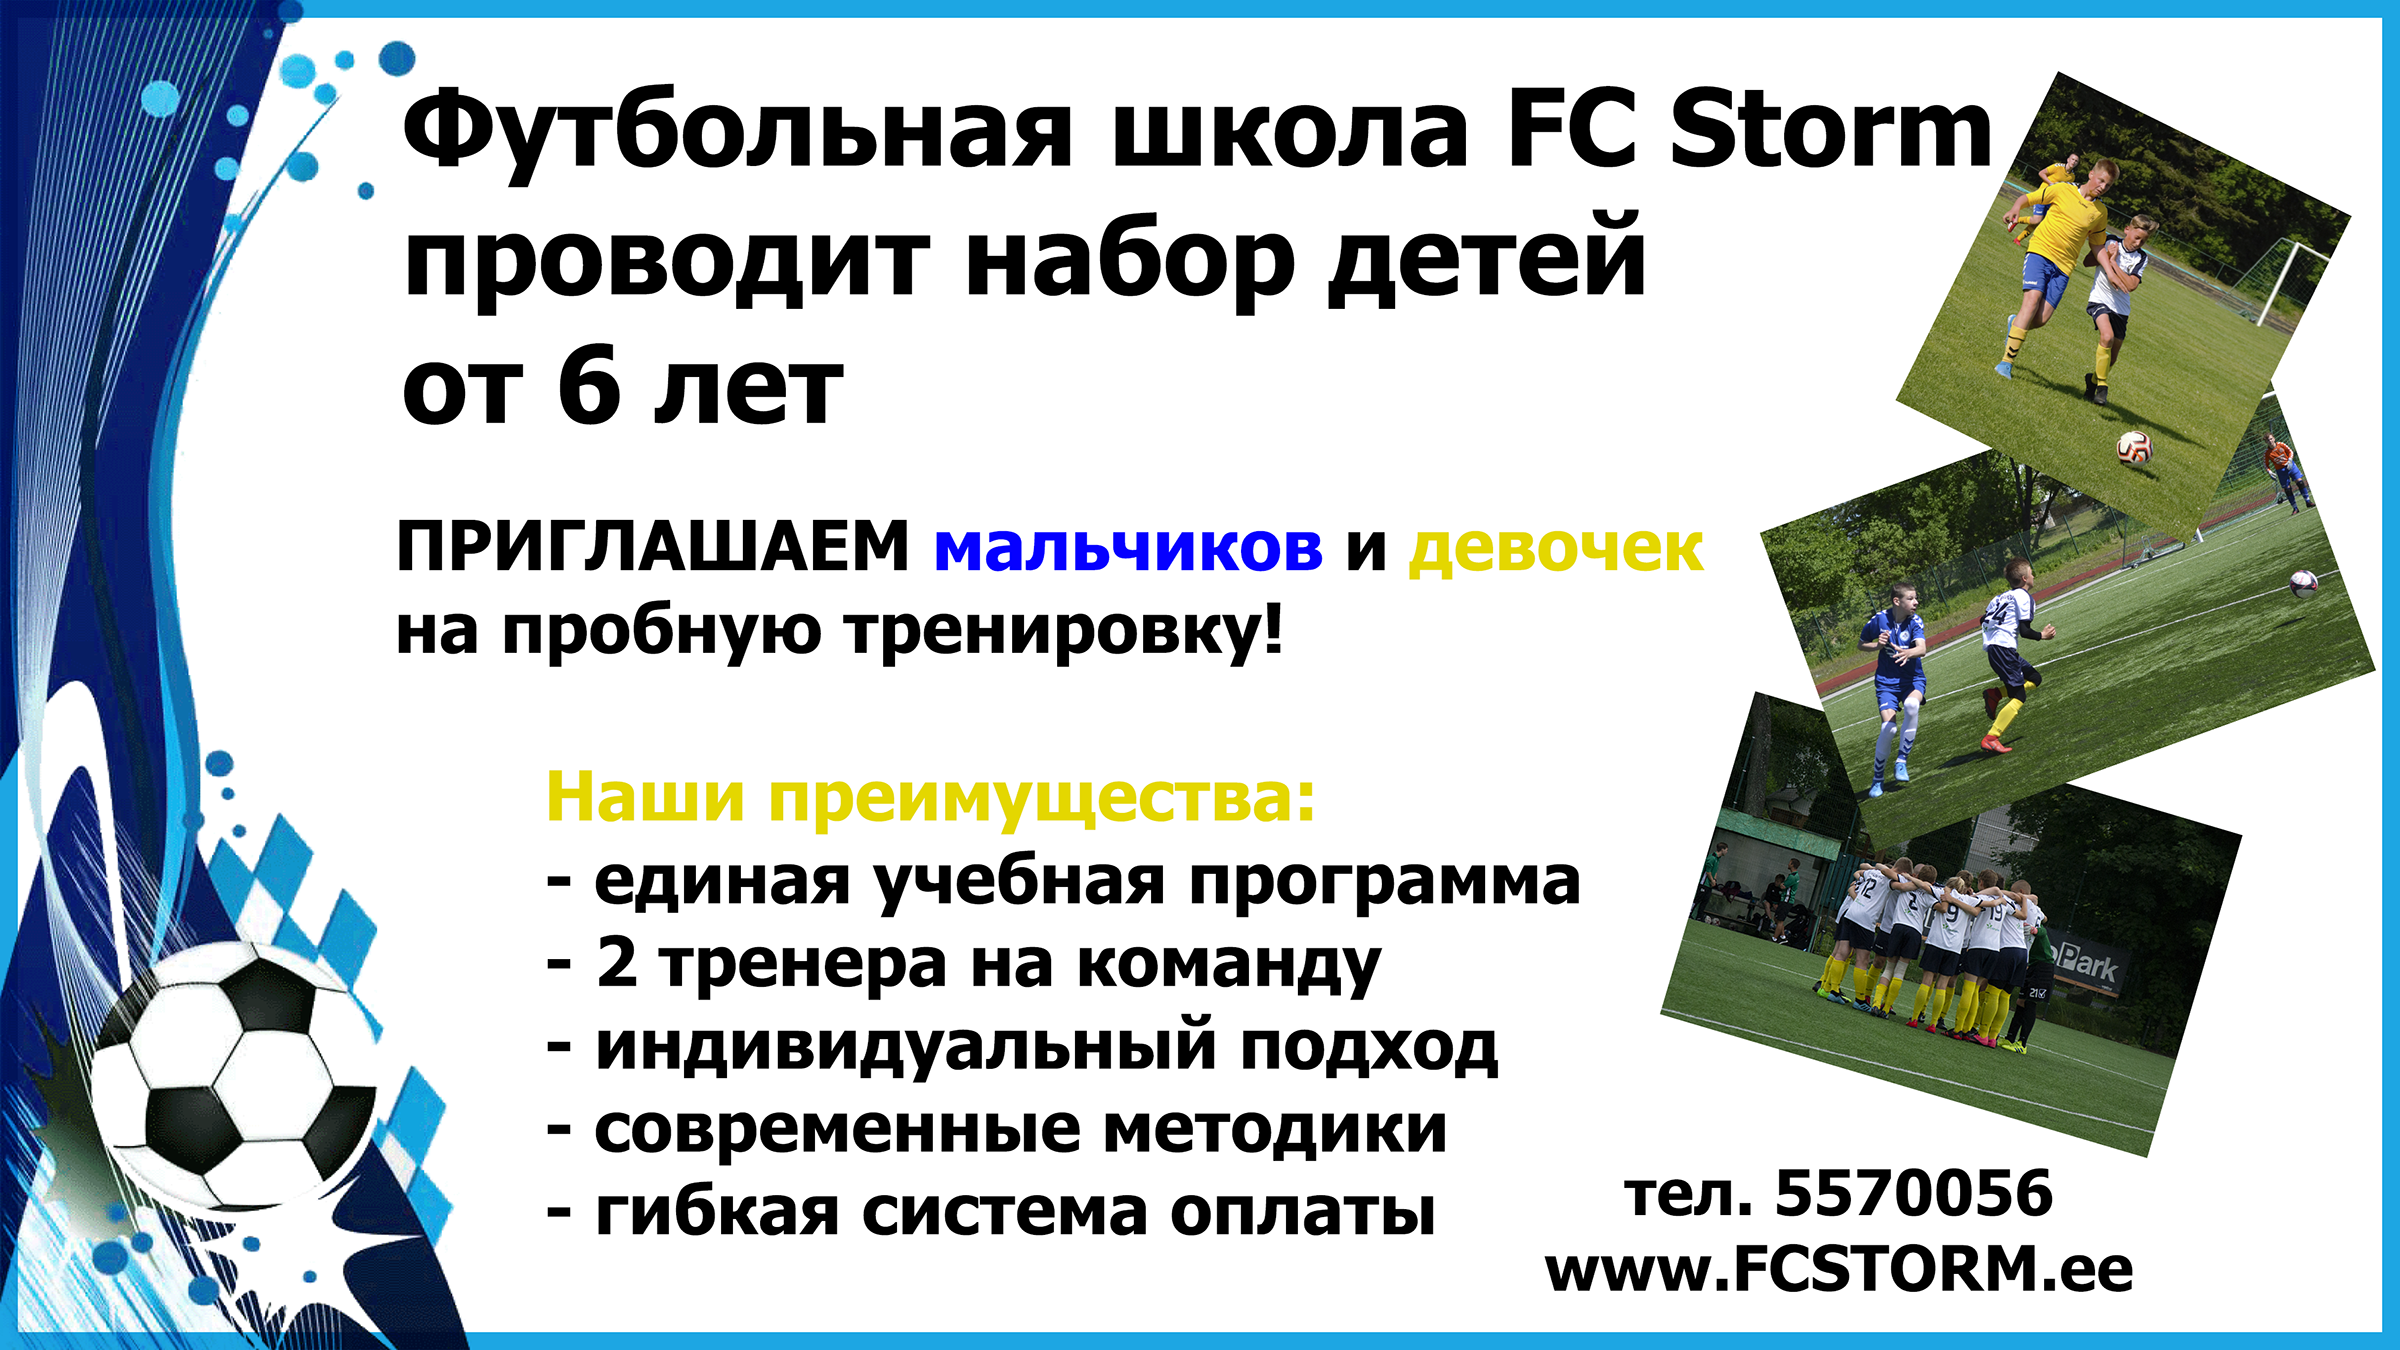 FC STORM